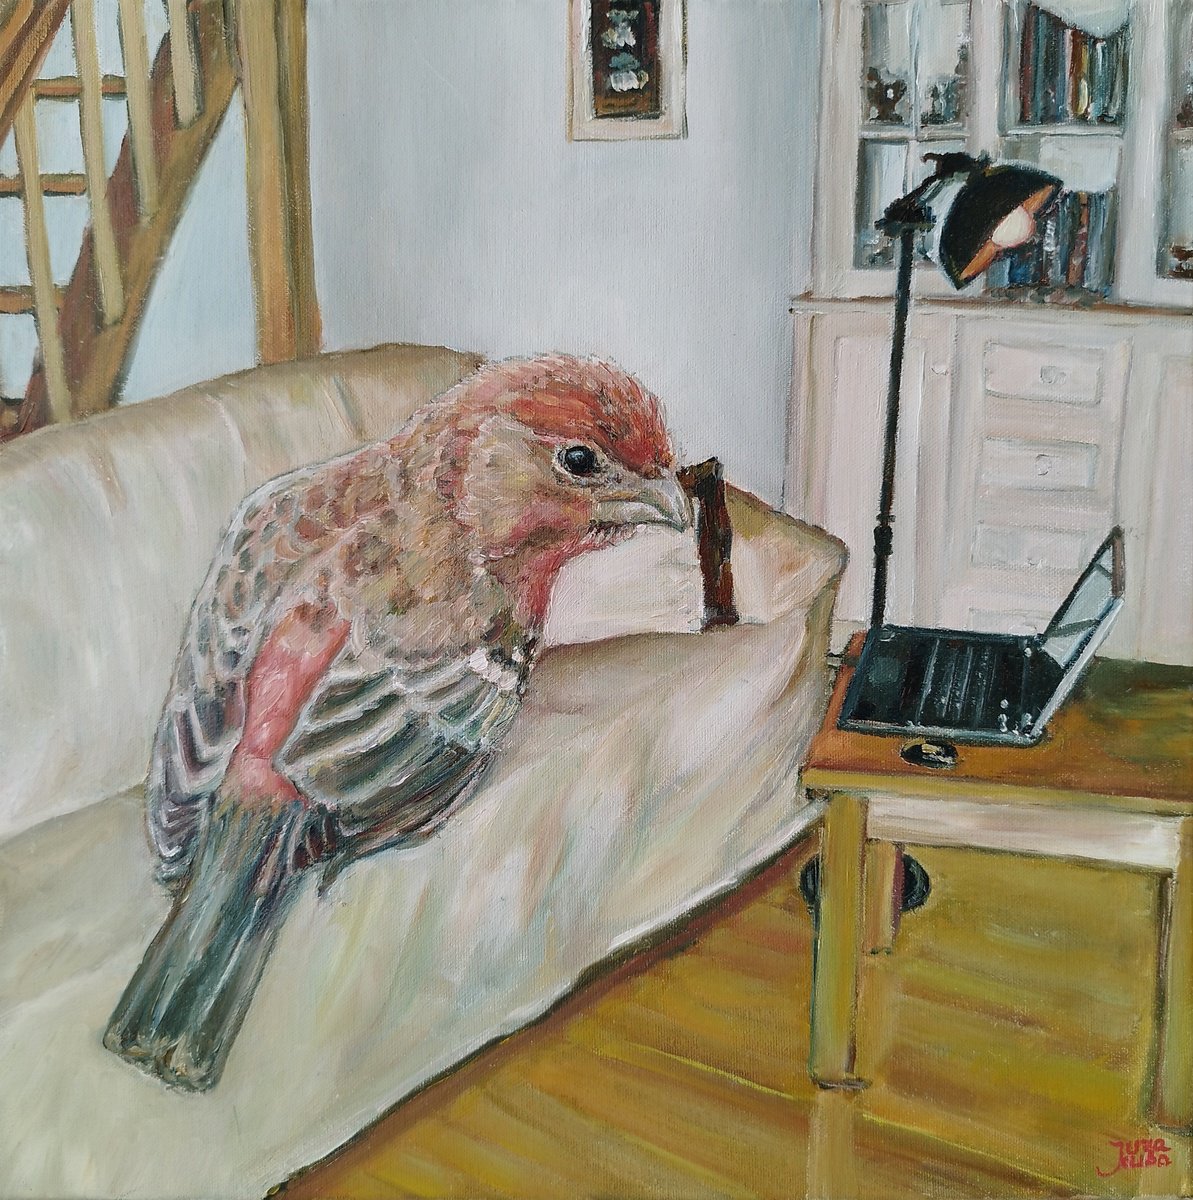 Bird At Home by Jura Kuba Art